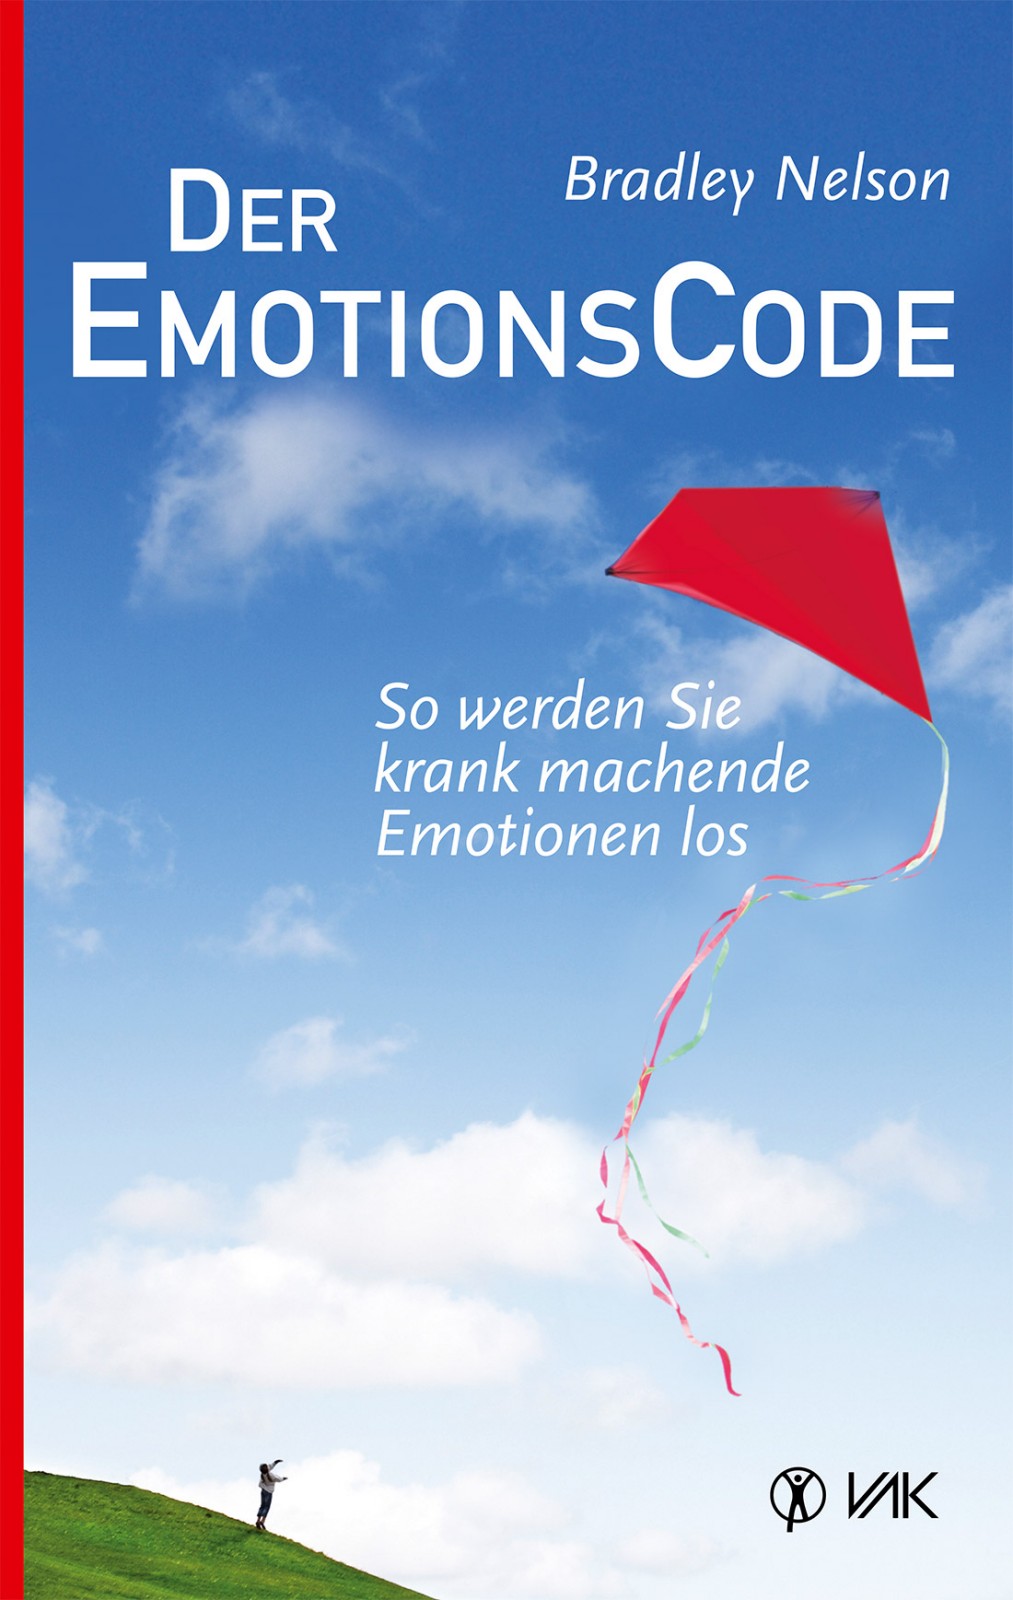 Der Emotionscode: so werden Sie krank machende Emotionen los